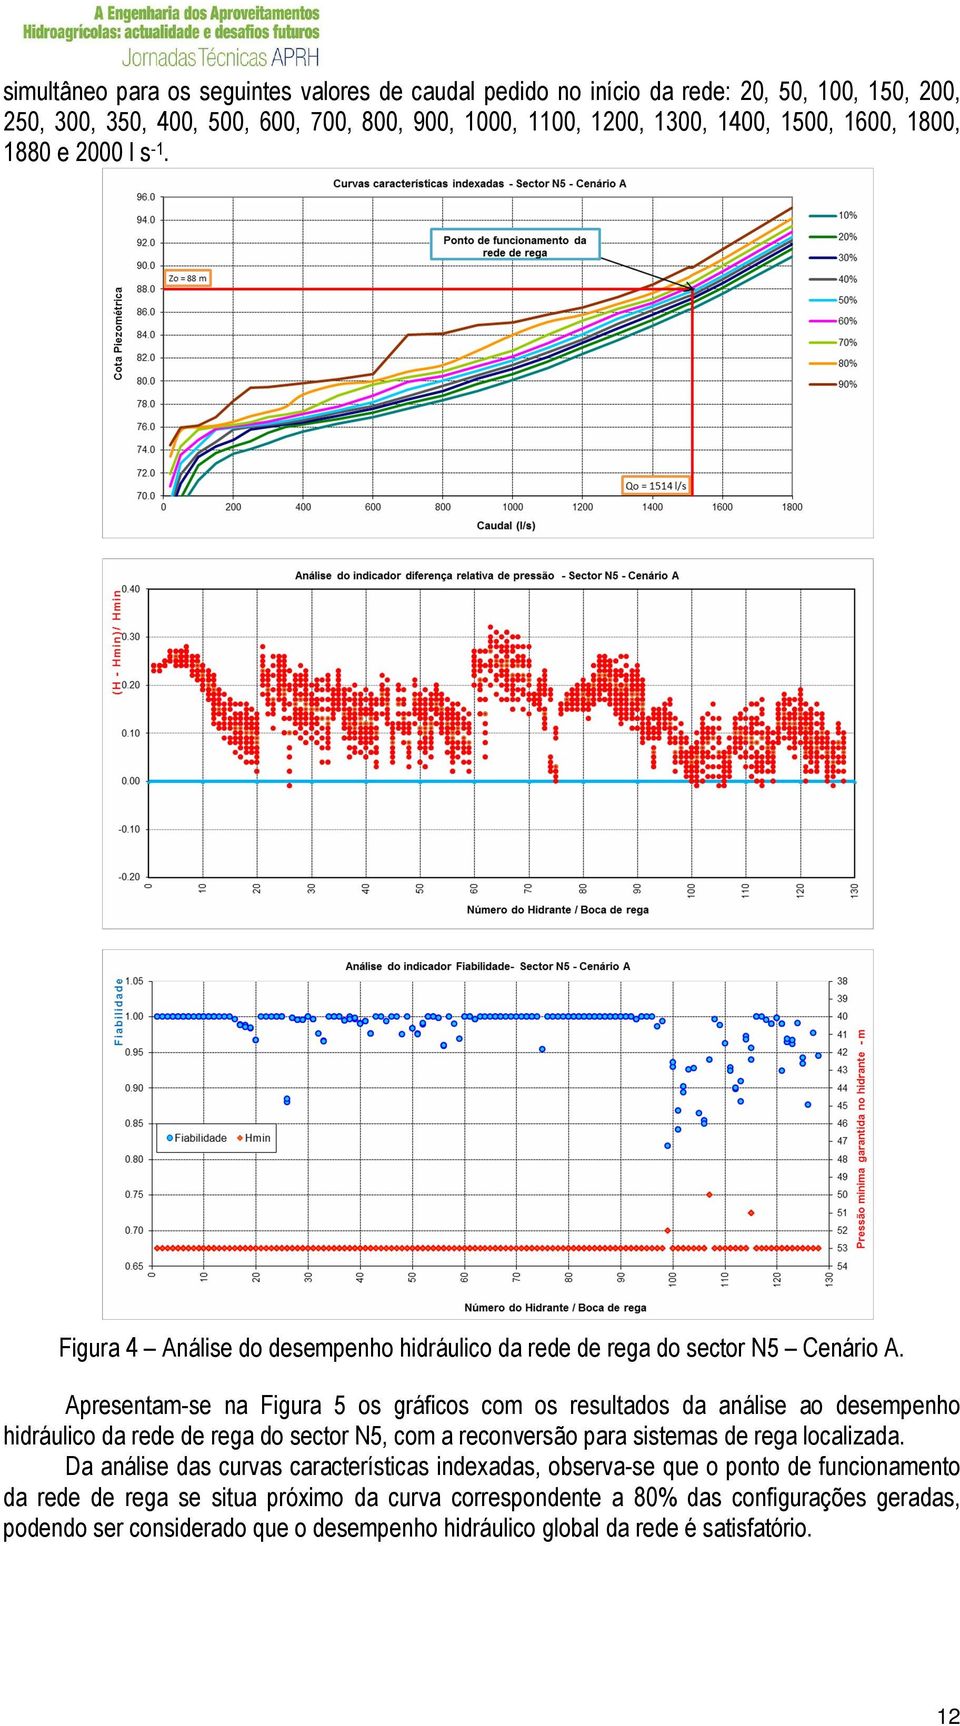 Apresentam-se na Figura 5 os gráficos com os resultados da análise ao desempenho hidráulico da rede de rega do sector N5, com a reconversão para sistemas de rega localizada.